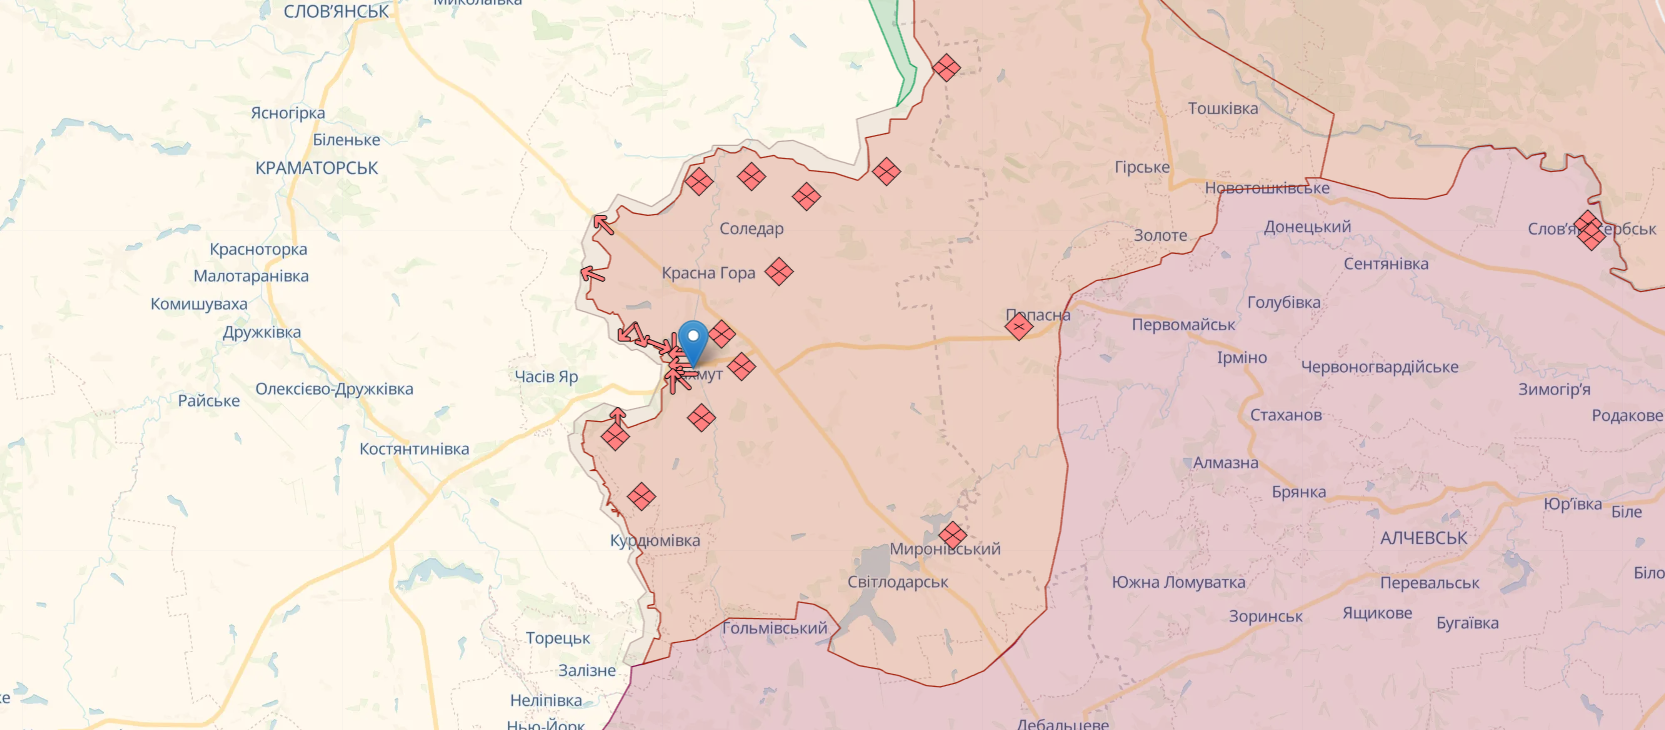 Бои за Бахмут: украинские пограничники отразили две вражеские попытки штурма